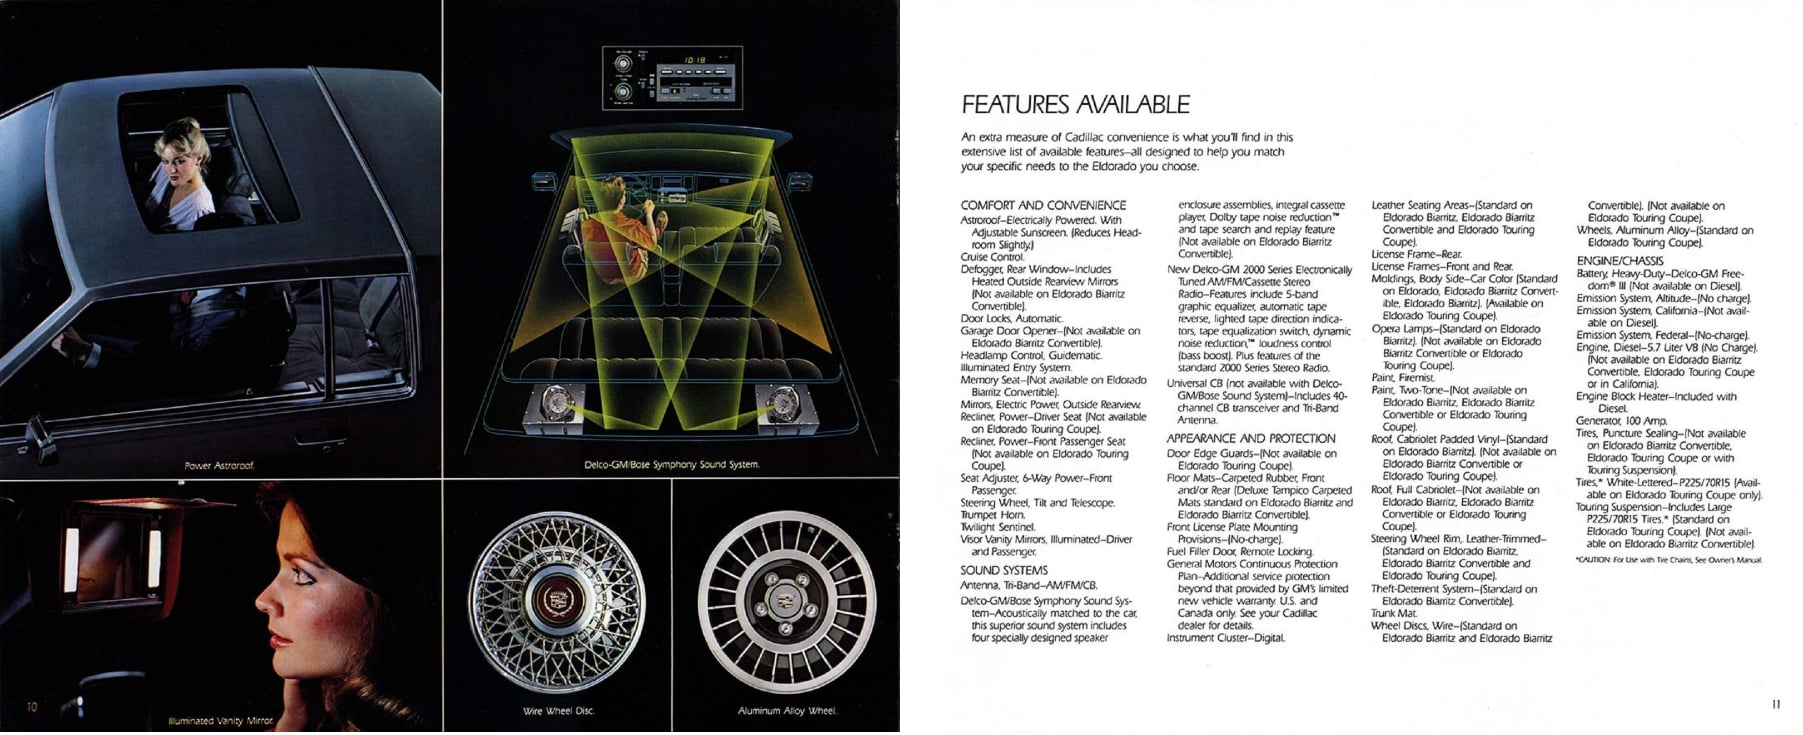 1984 Cadillac Eldorado Brochure 10-11